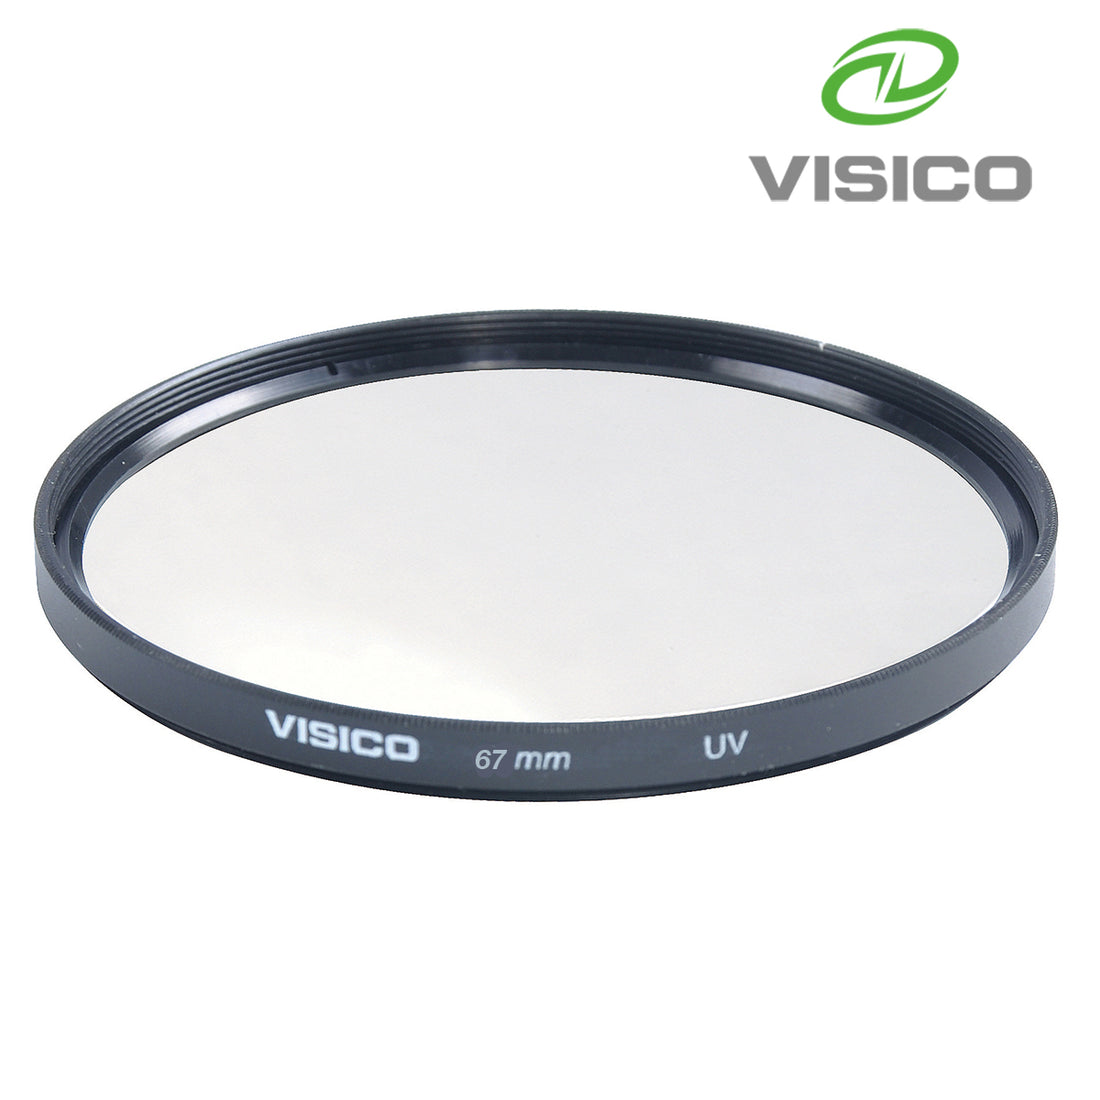 Visico 67mm Ultra Thin Multicoated HD Ultra Violet (UV) Filter VS67UV